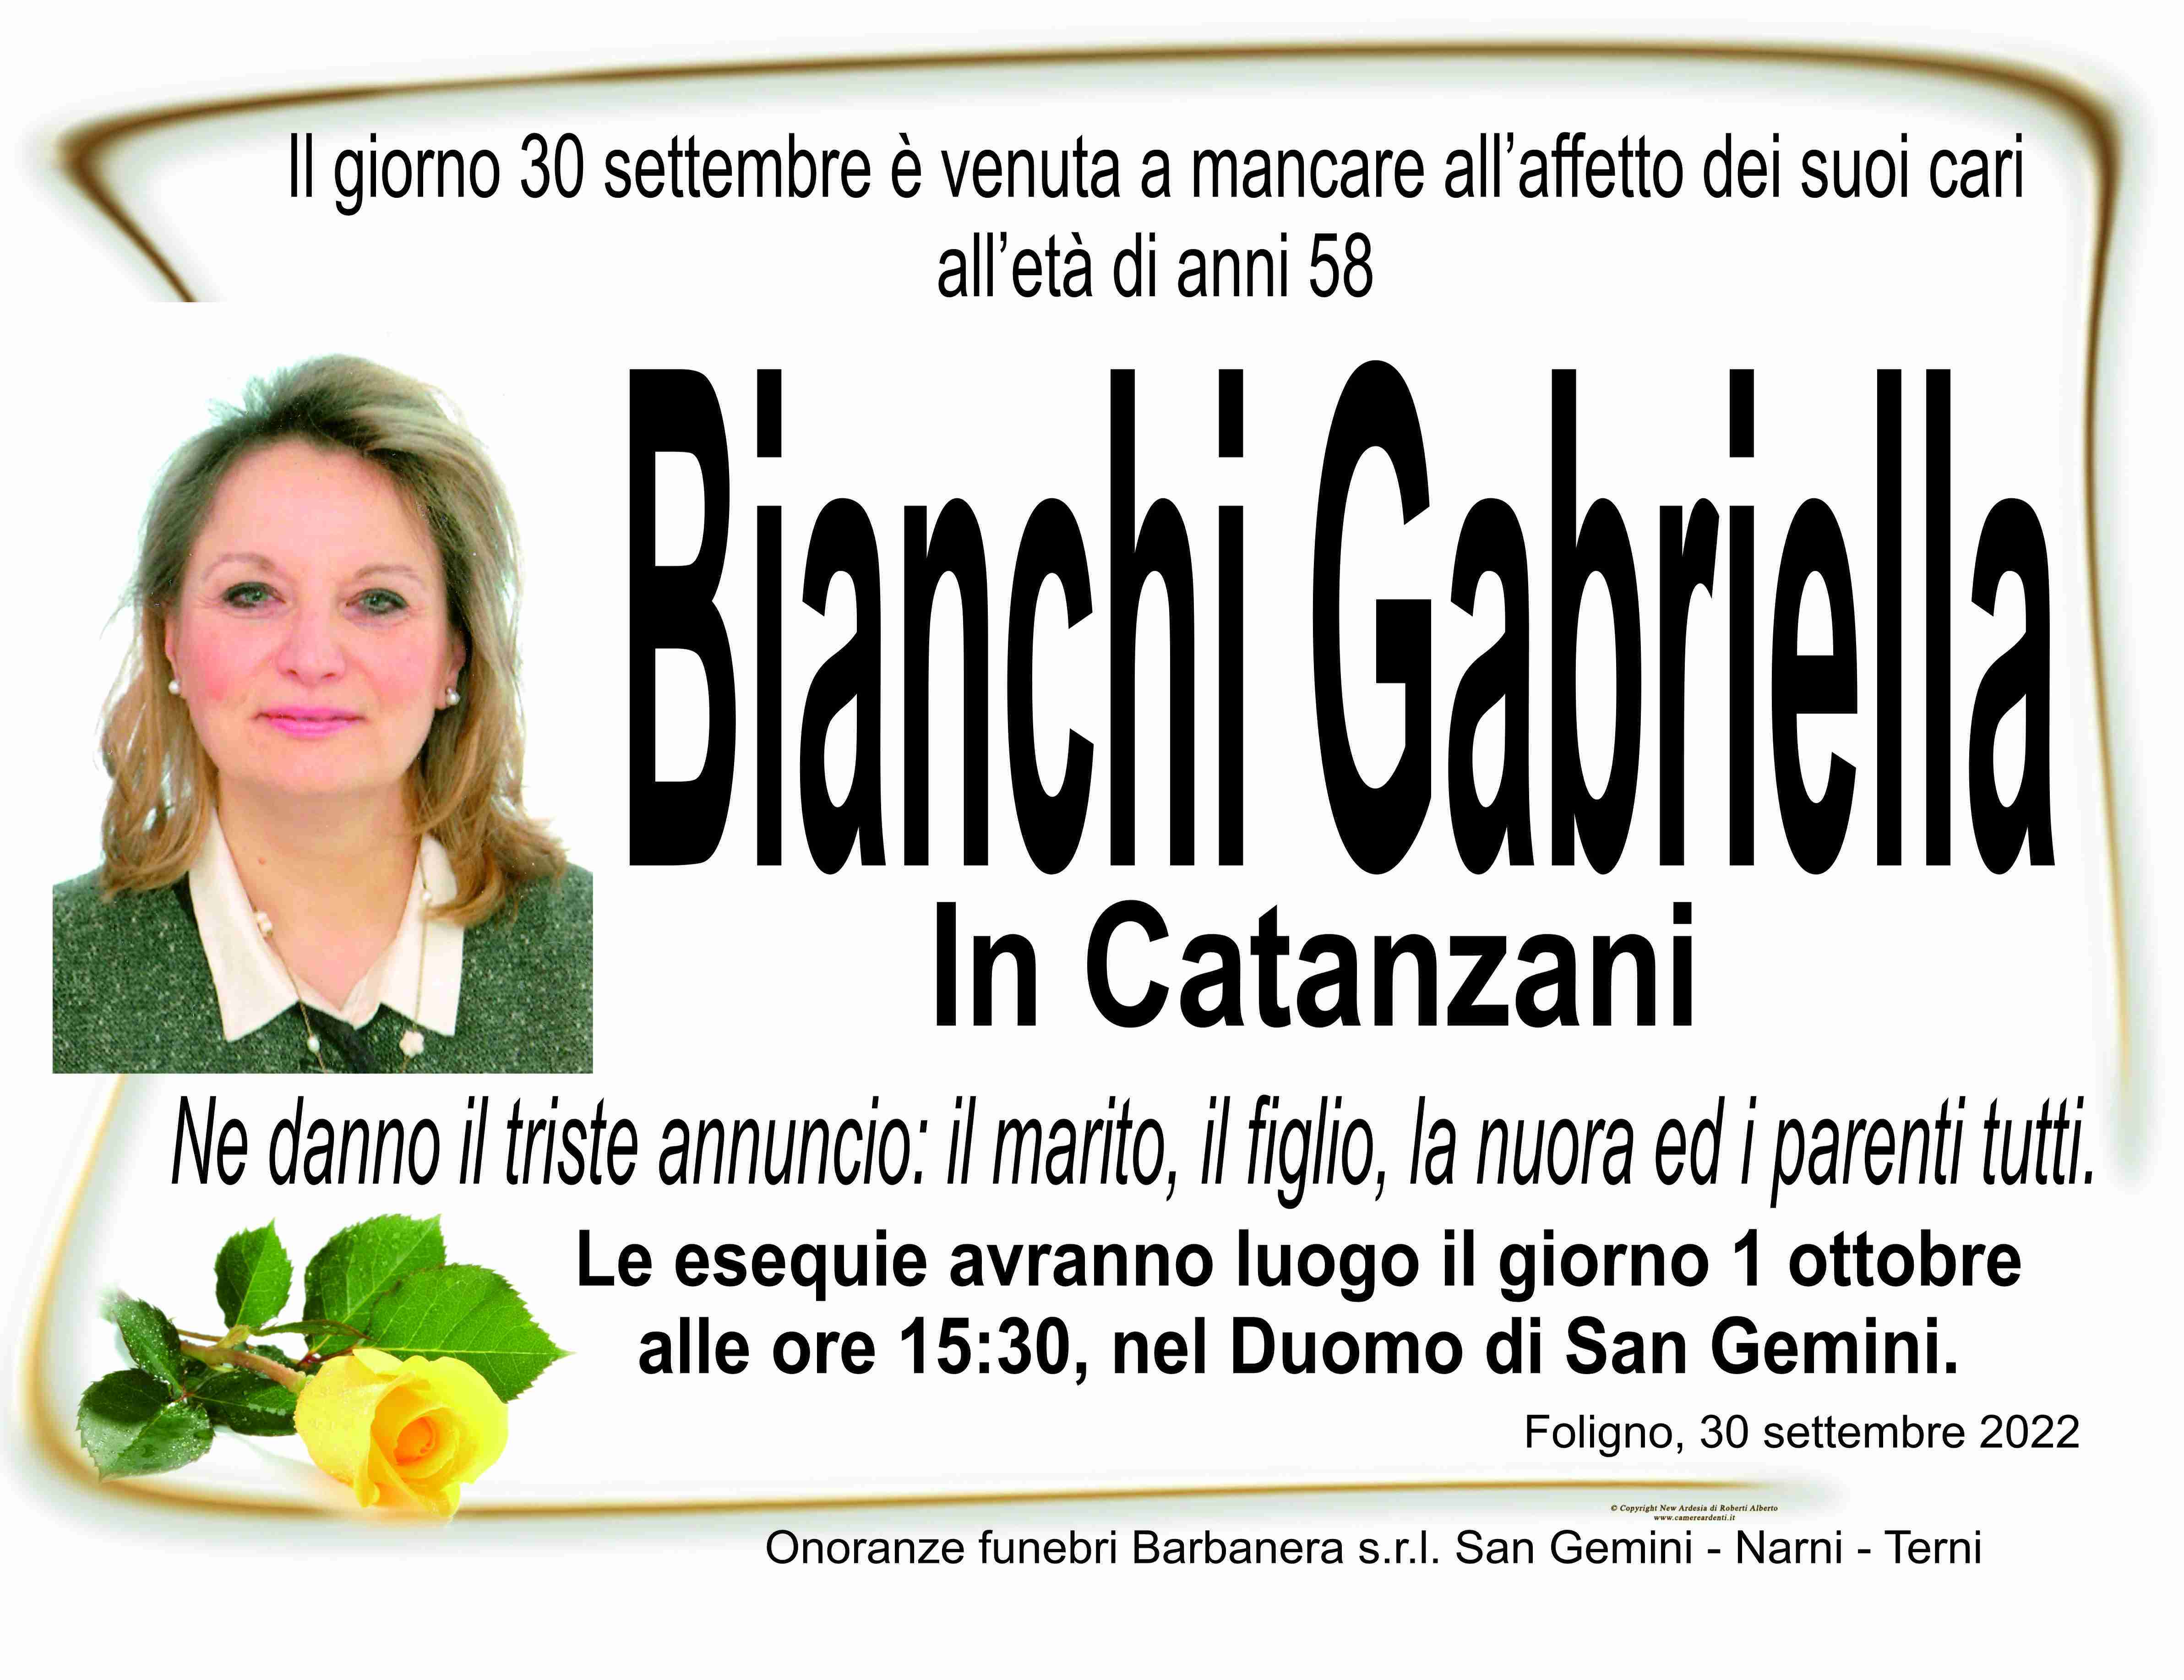 Gabriella Bianchi